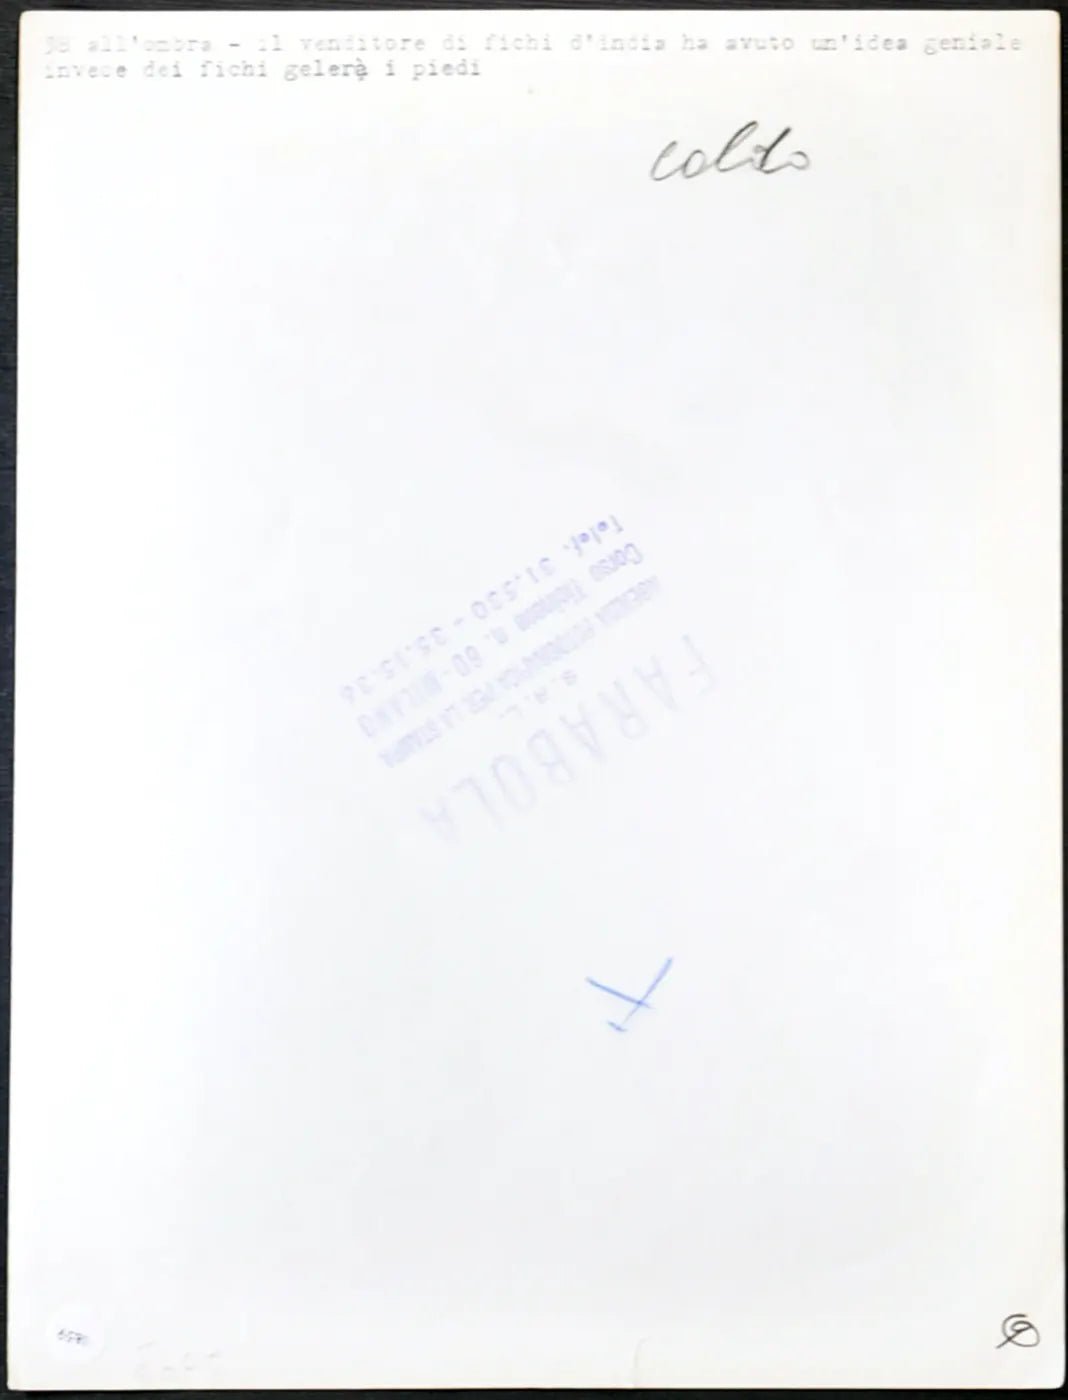 Venditore di fichi d'India Milano anni 60 Ft 1859 - Stampa 24x18 cm - Farabola Stampa ai sali d'argento